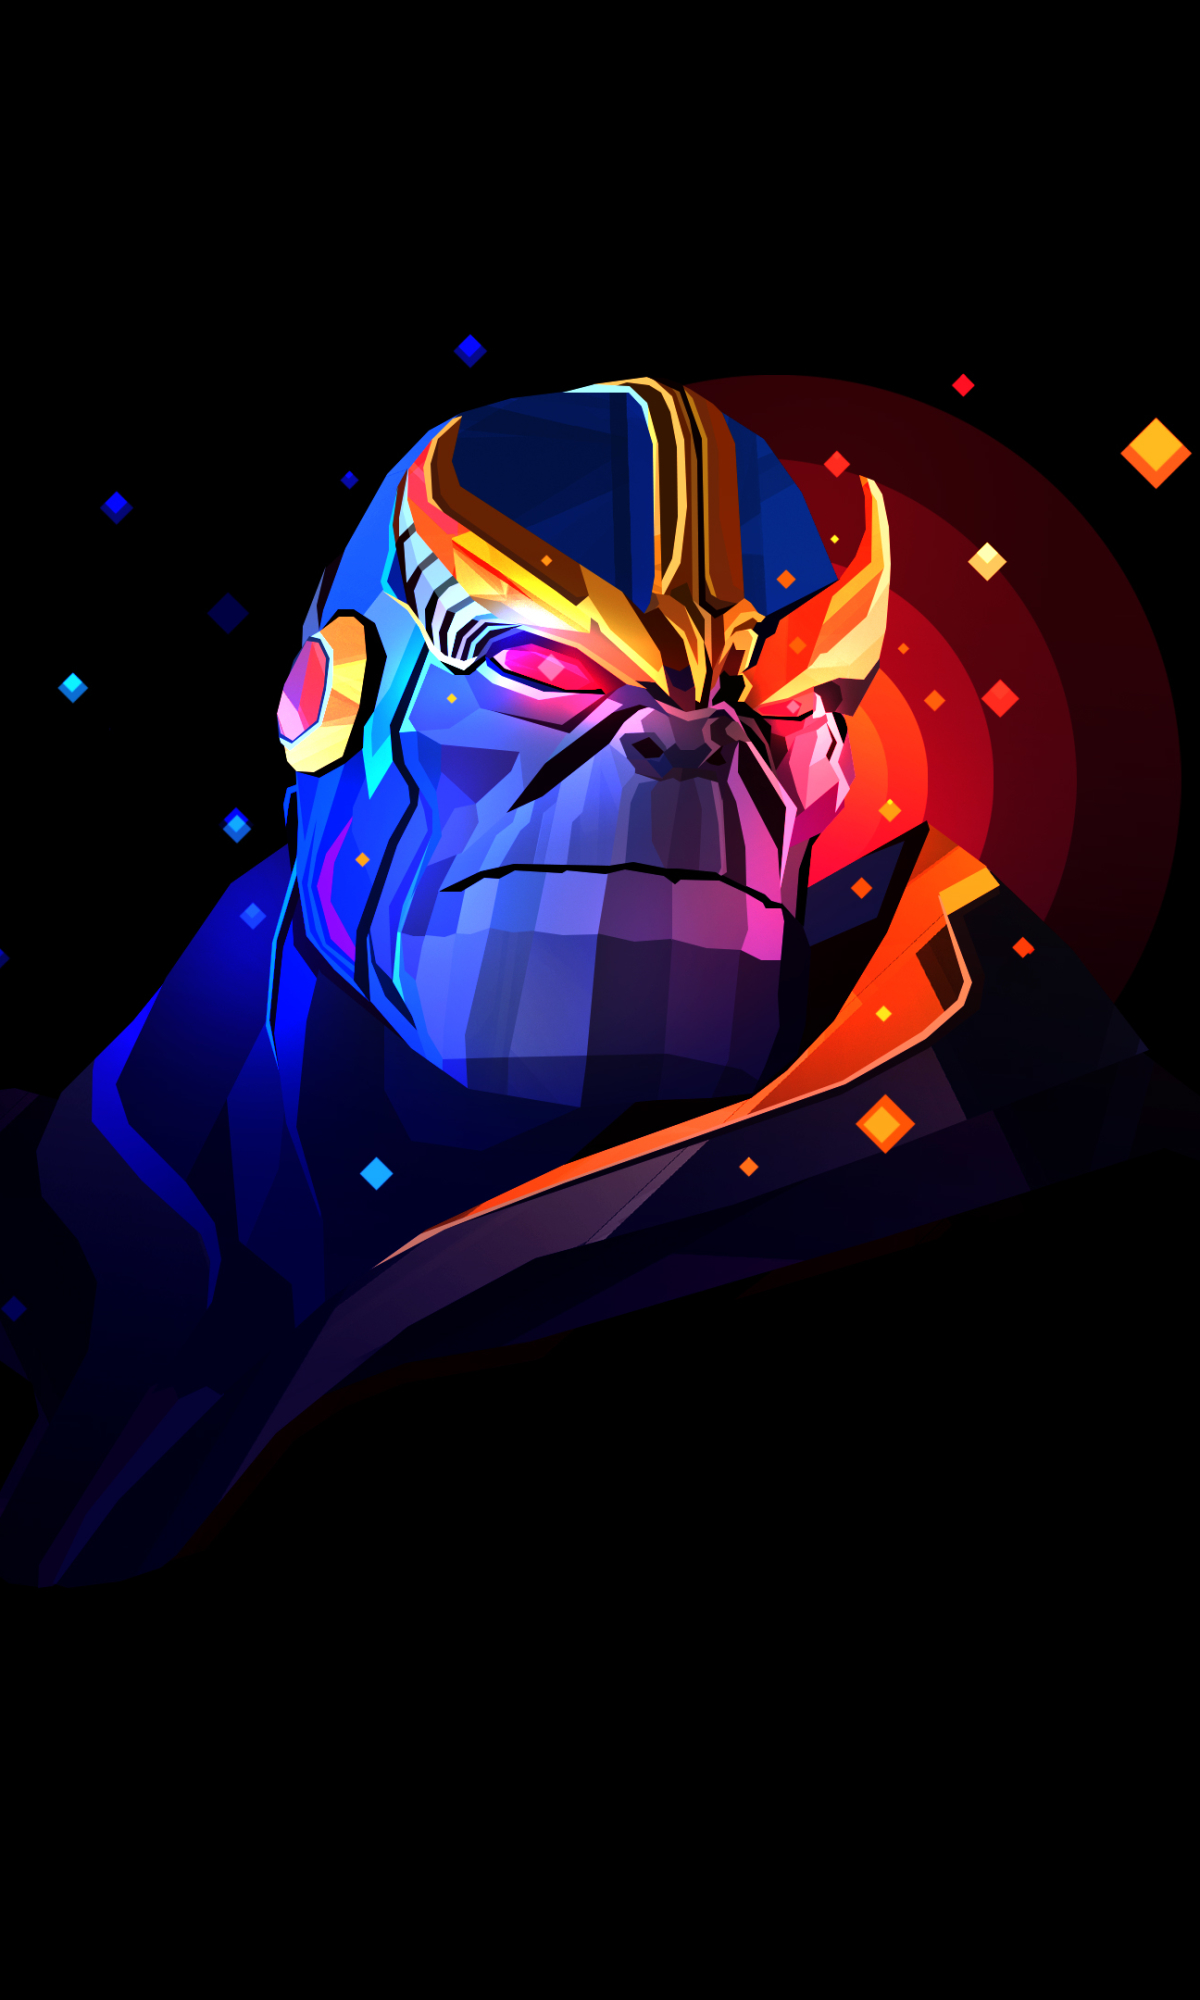 Descarga gratuita de fondo de pantalla para móvil de Historietas, Thanos.